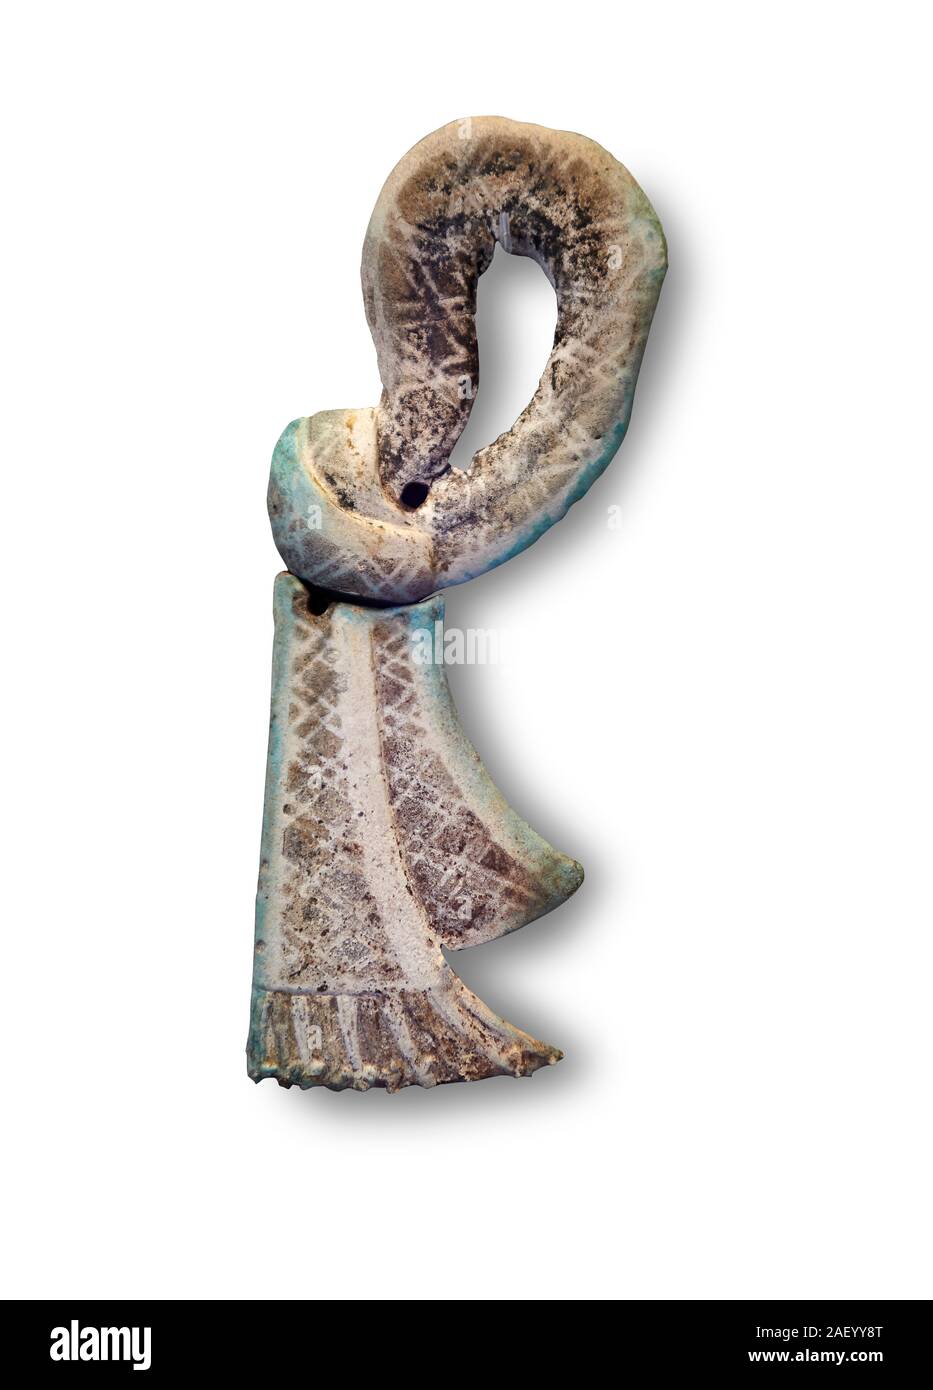 Ceramica micenea nodi sacrale da grave IV, Cerchio Grave, Micene, XVI sec. a.c. Museo Archeologico Nazionale di Atene. Cat No 569, bianco Backgro Foto Stock